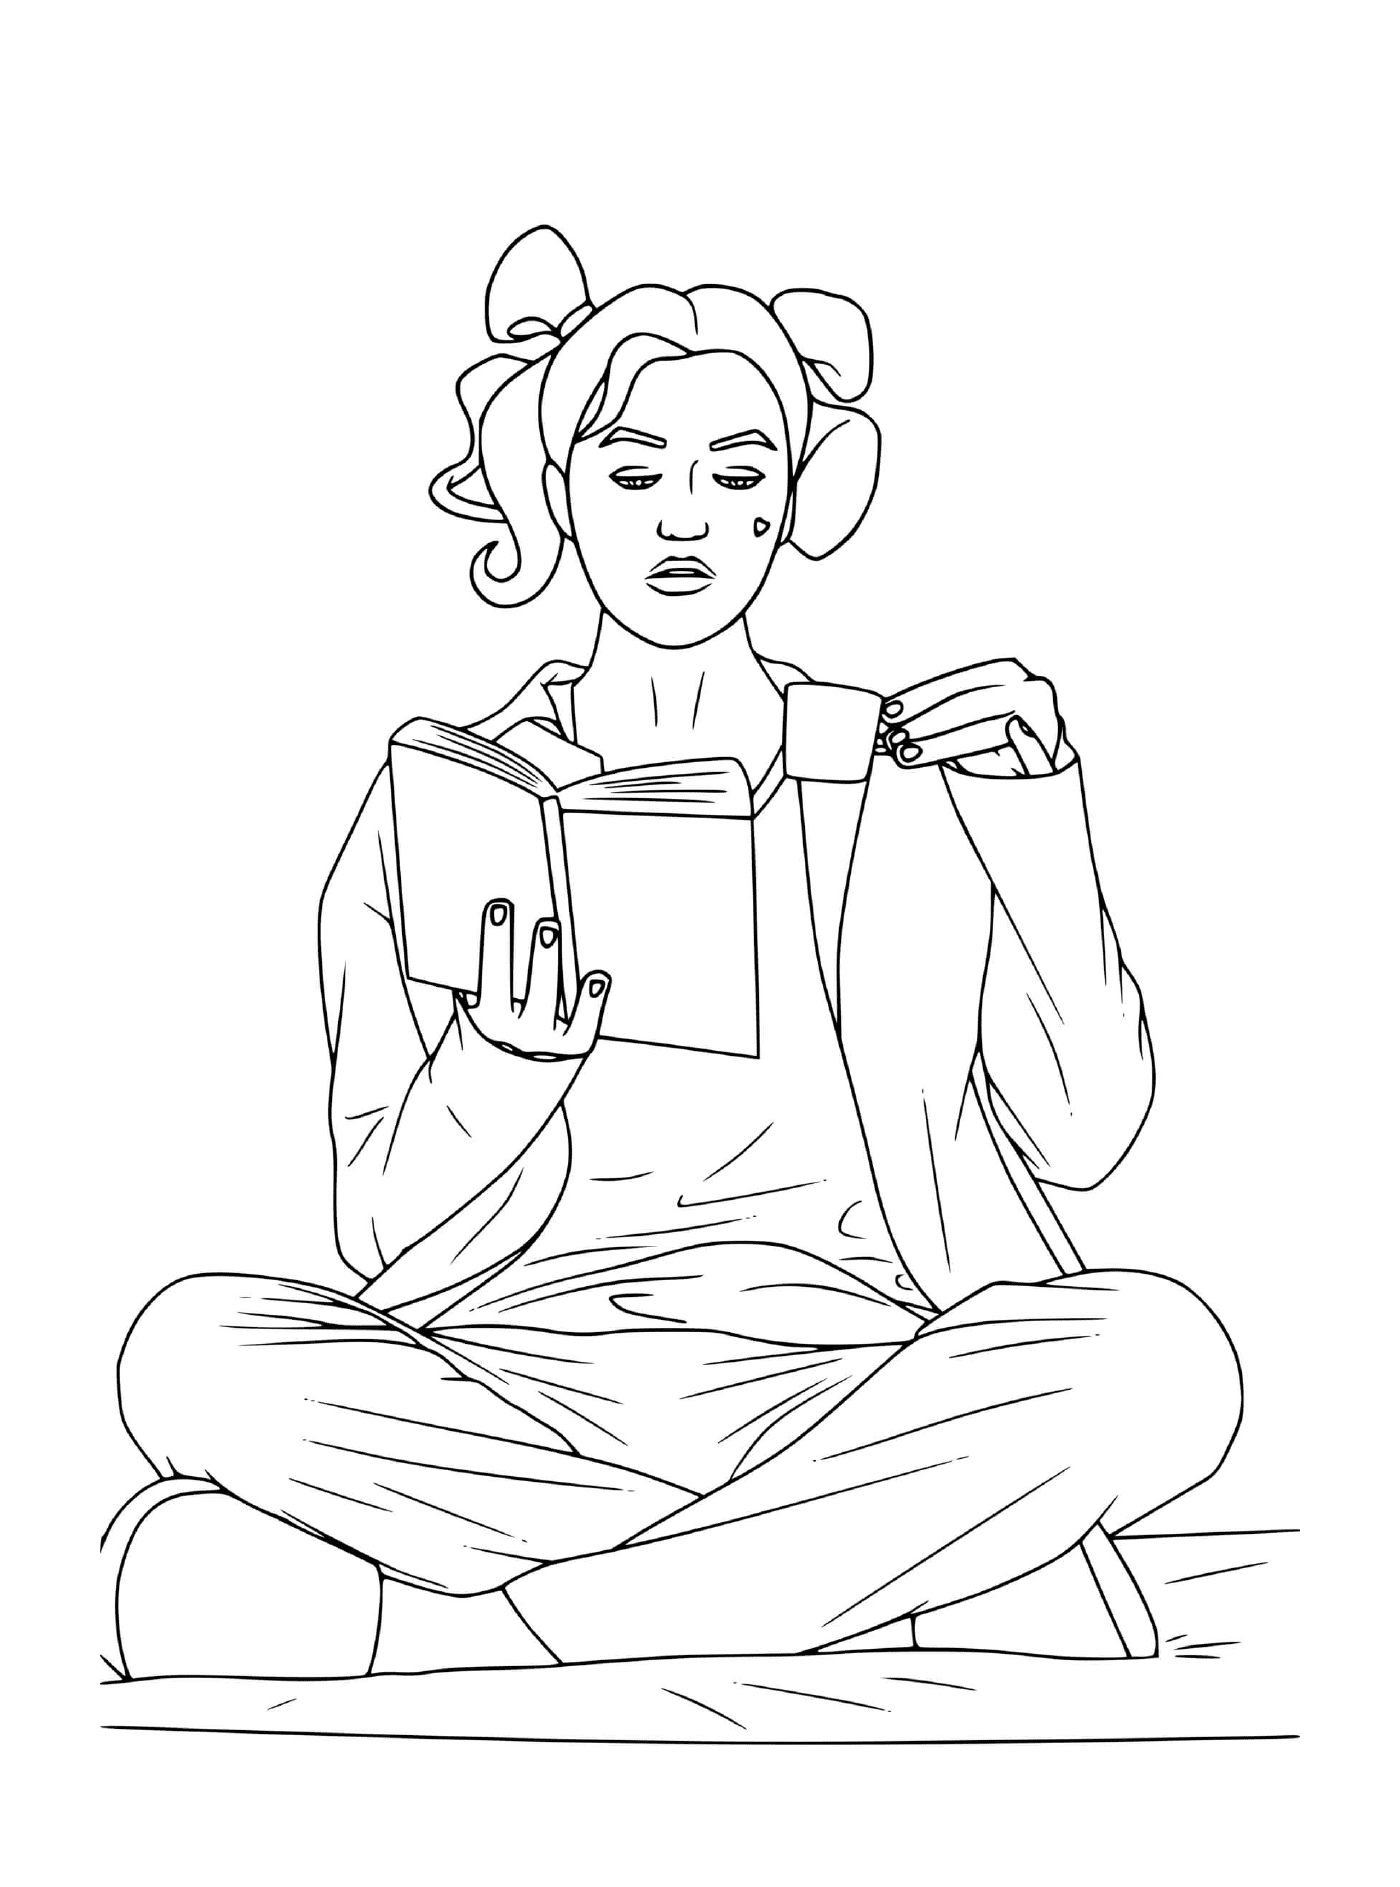   Femme assise par terre, lisant 